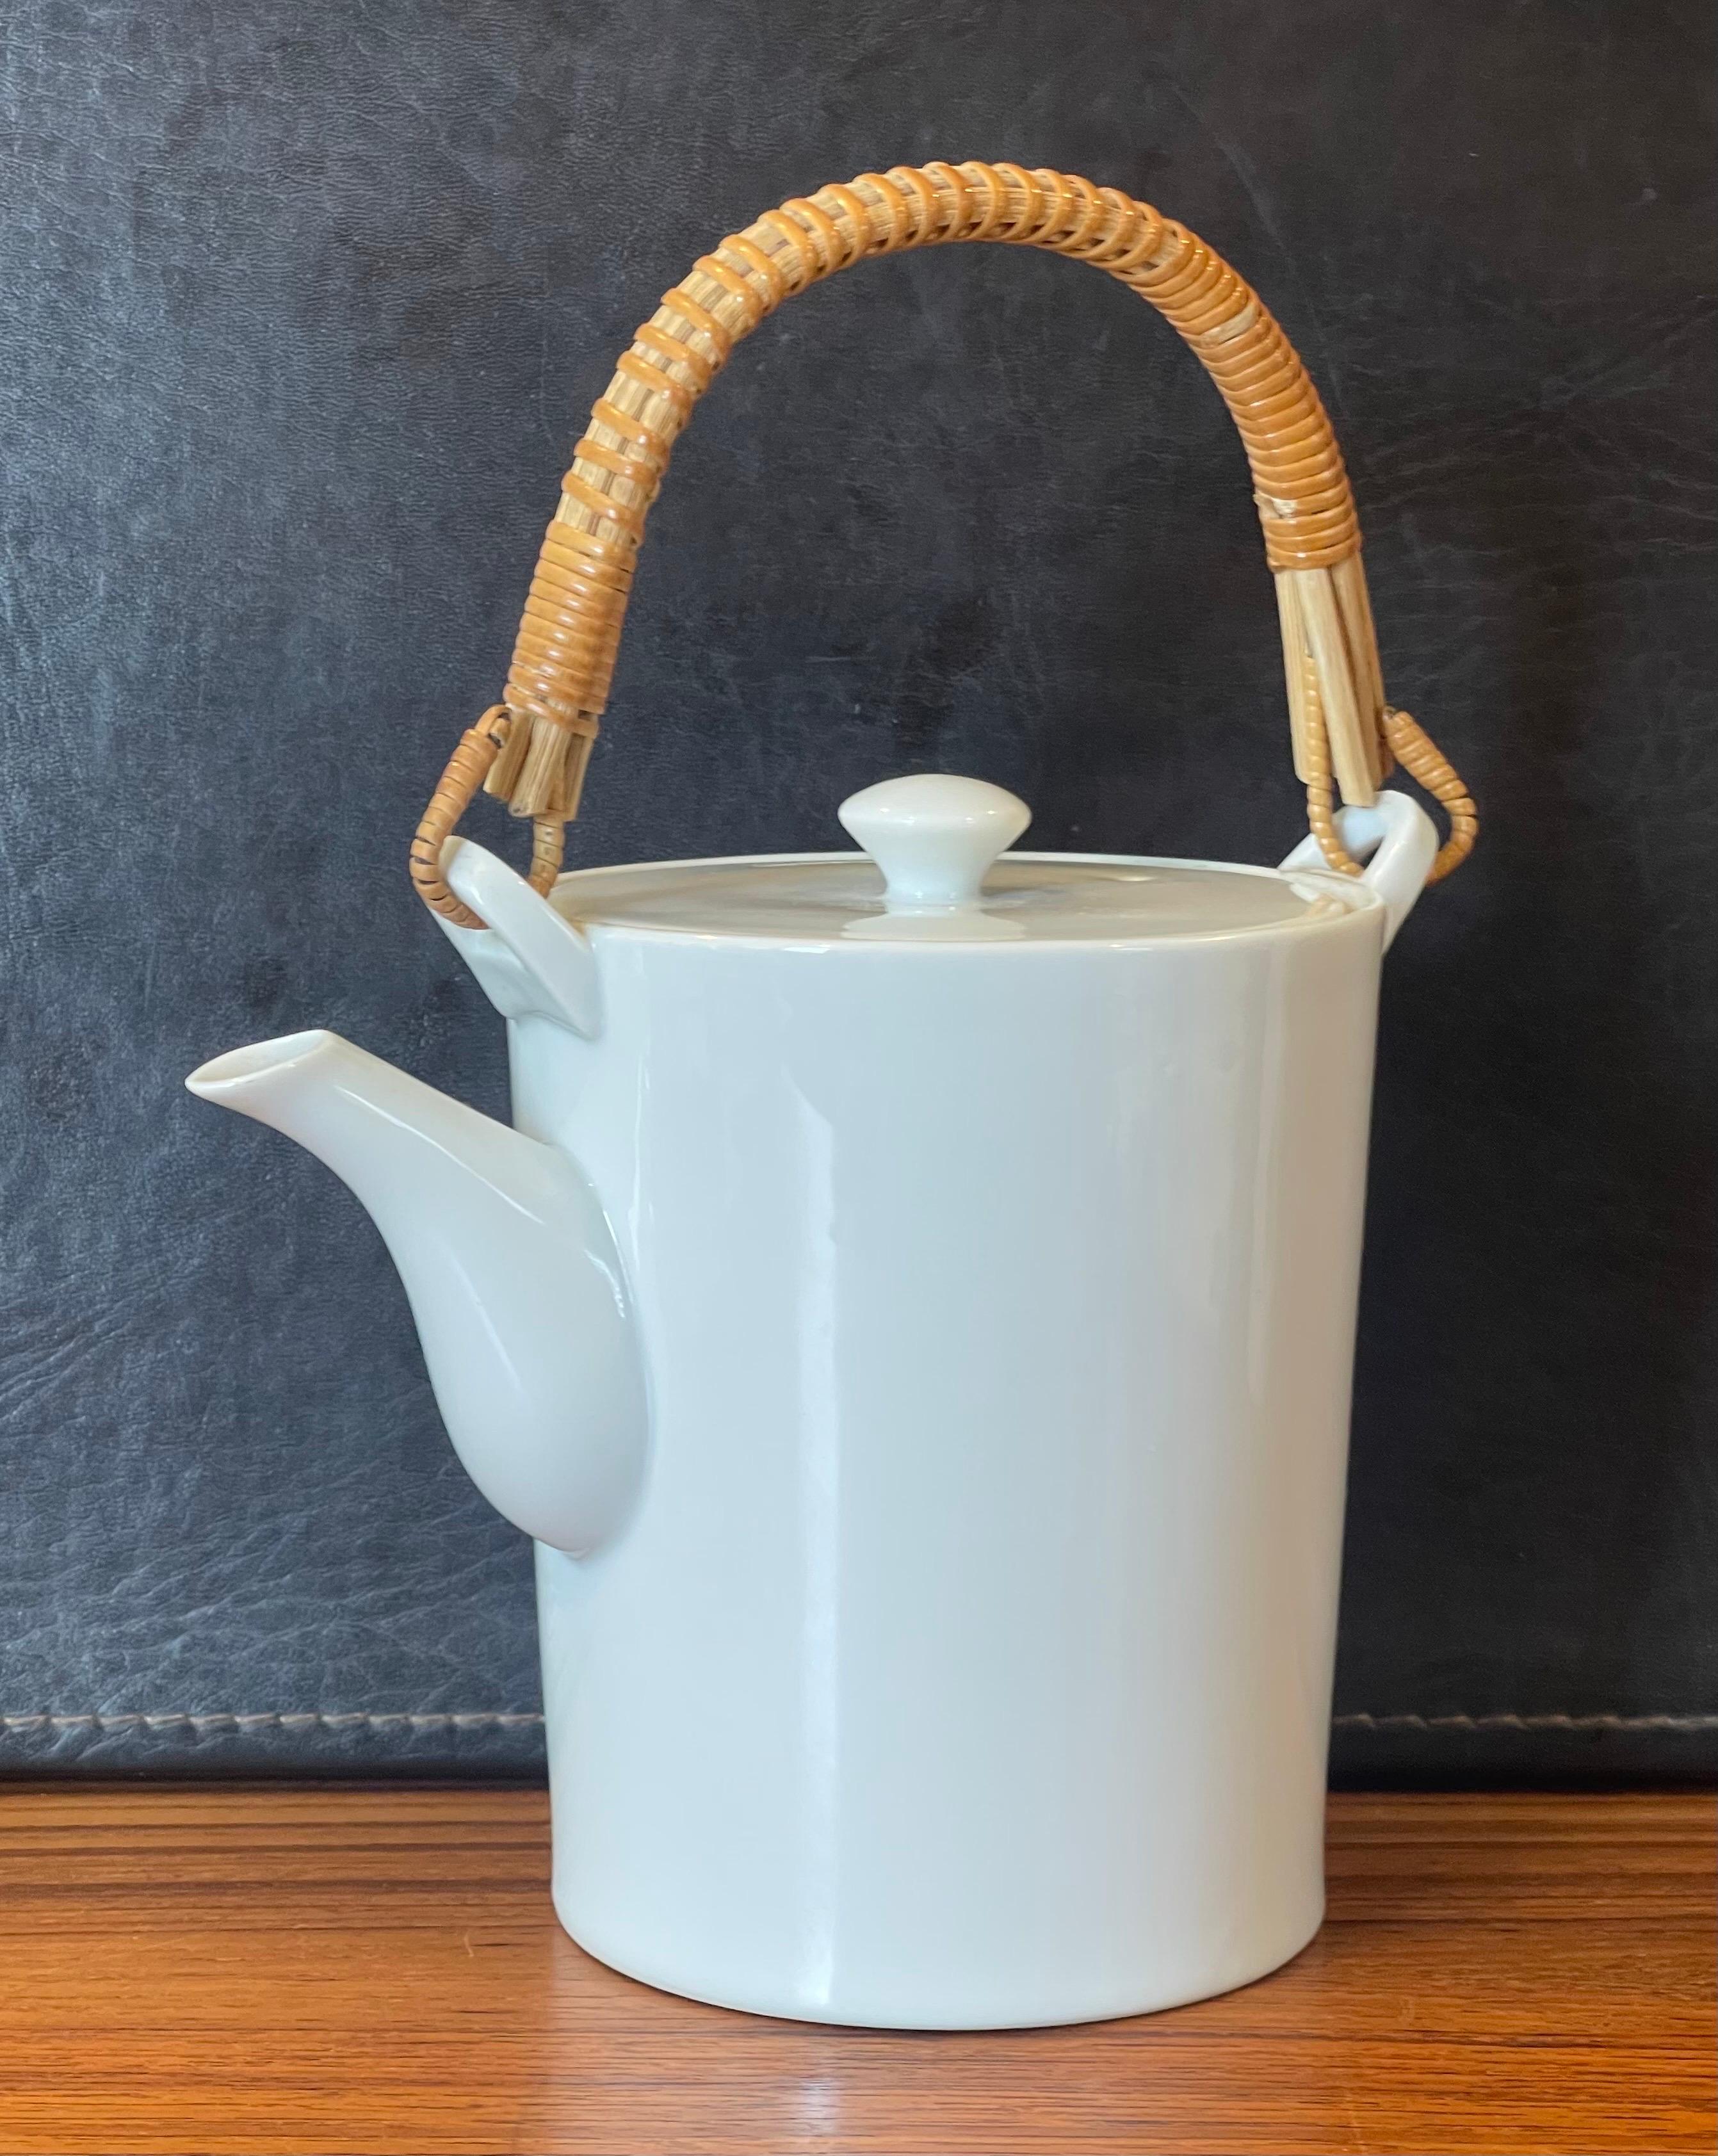 Rare théière en porcelaine blanche et poignée en canne par Kenji Fujita pour Freeman Lederman, vers les années 1950. Le pot est en très bon état vintage, sans éclats ni fissures (quelques taches de thé à l'intérieur) et mesure 5.25 